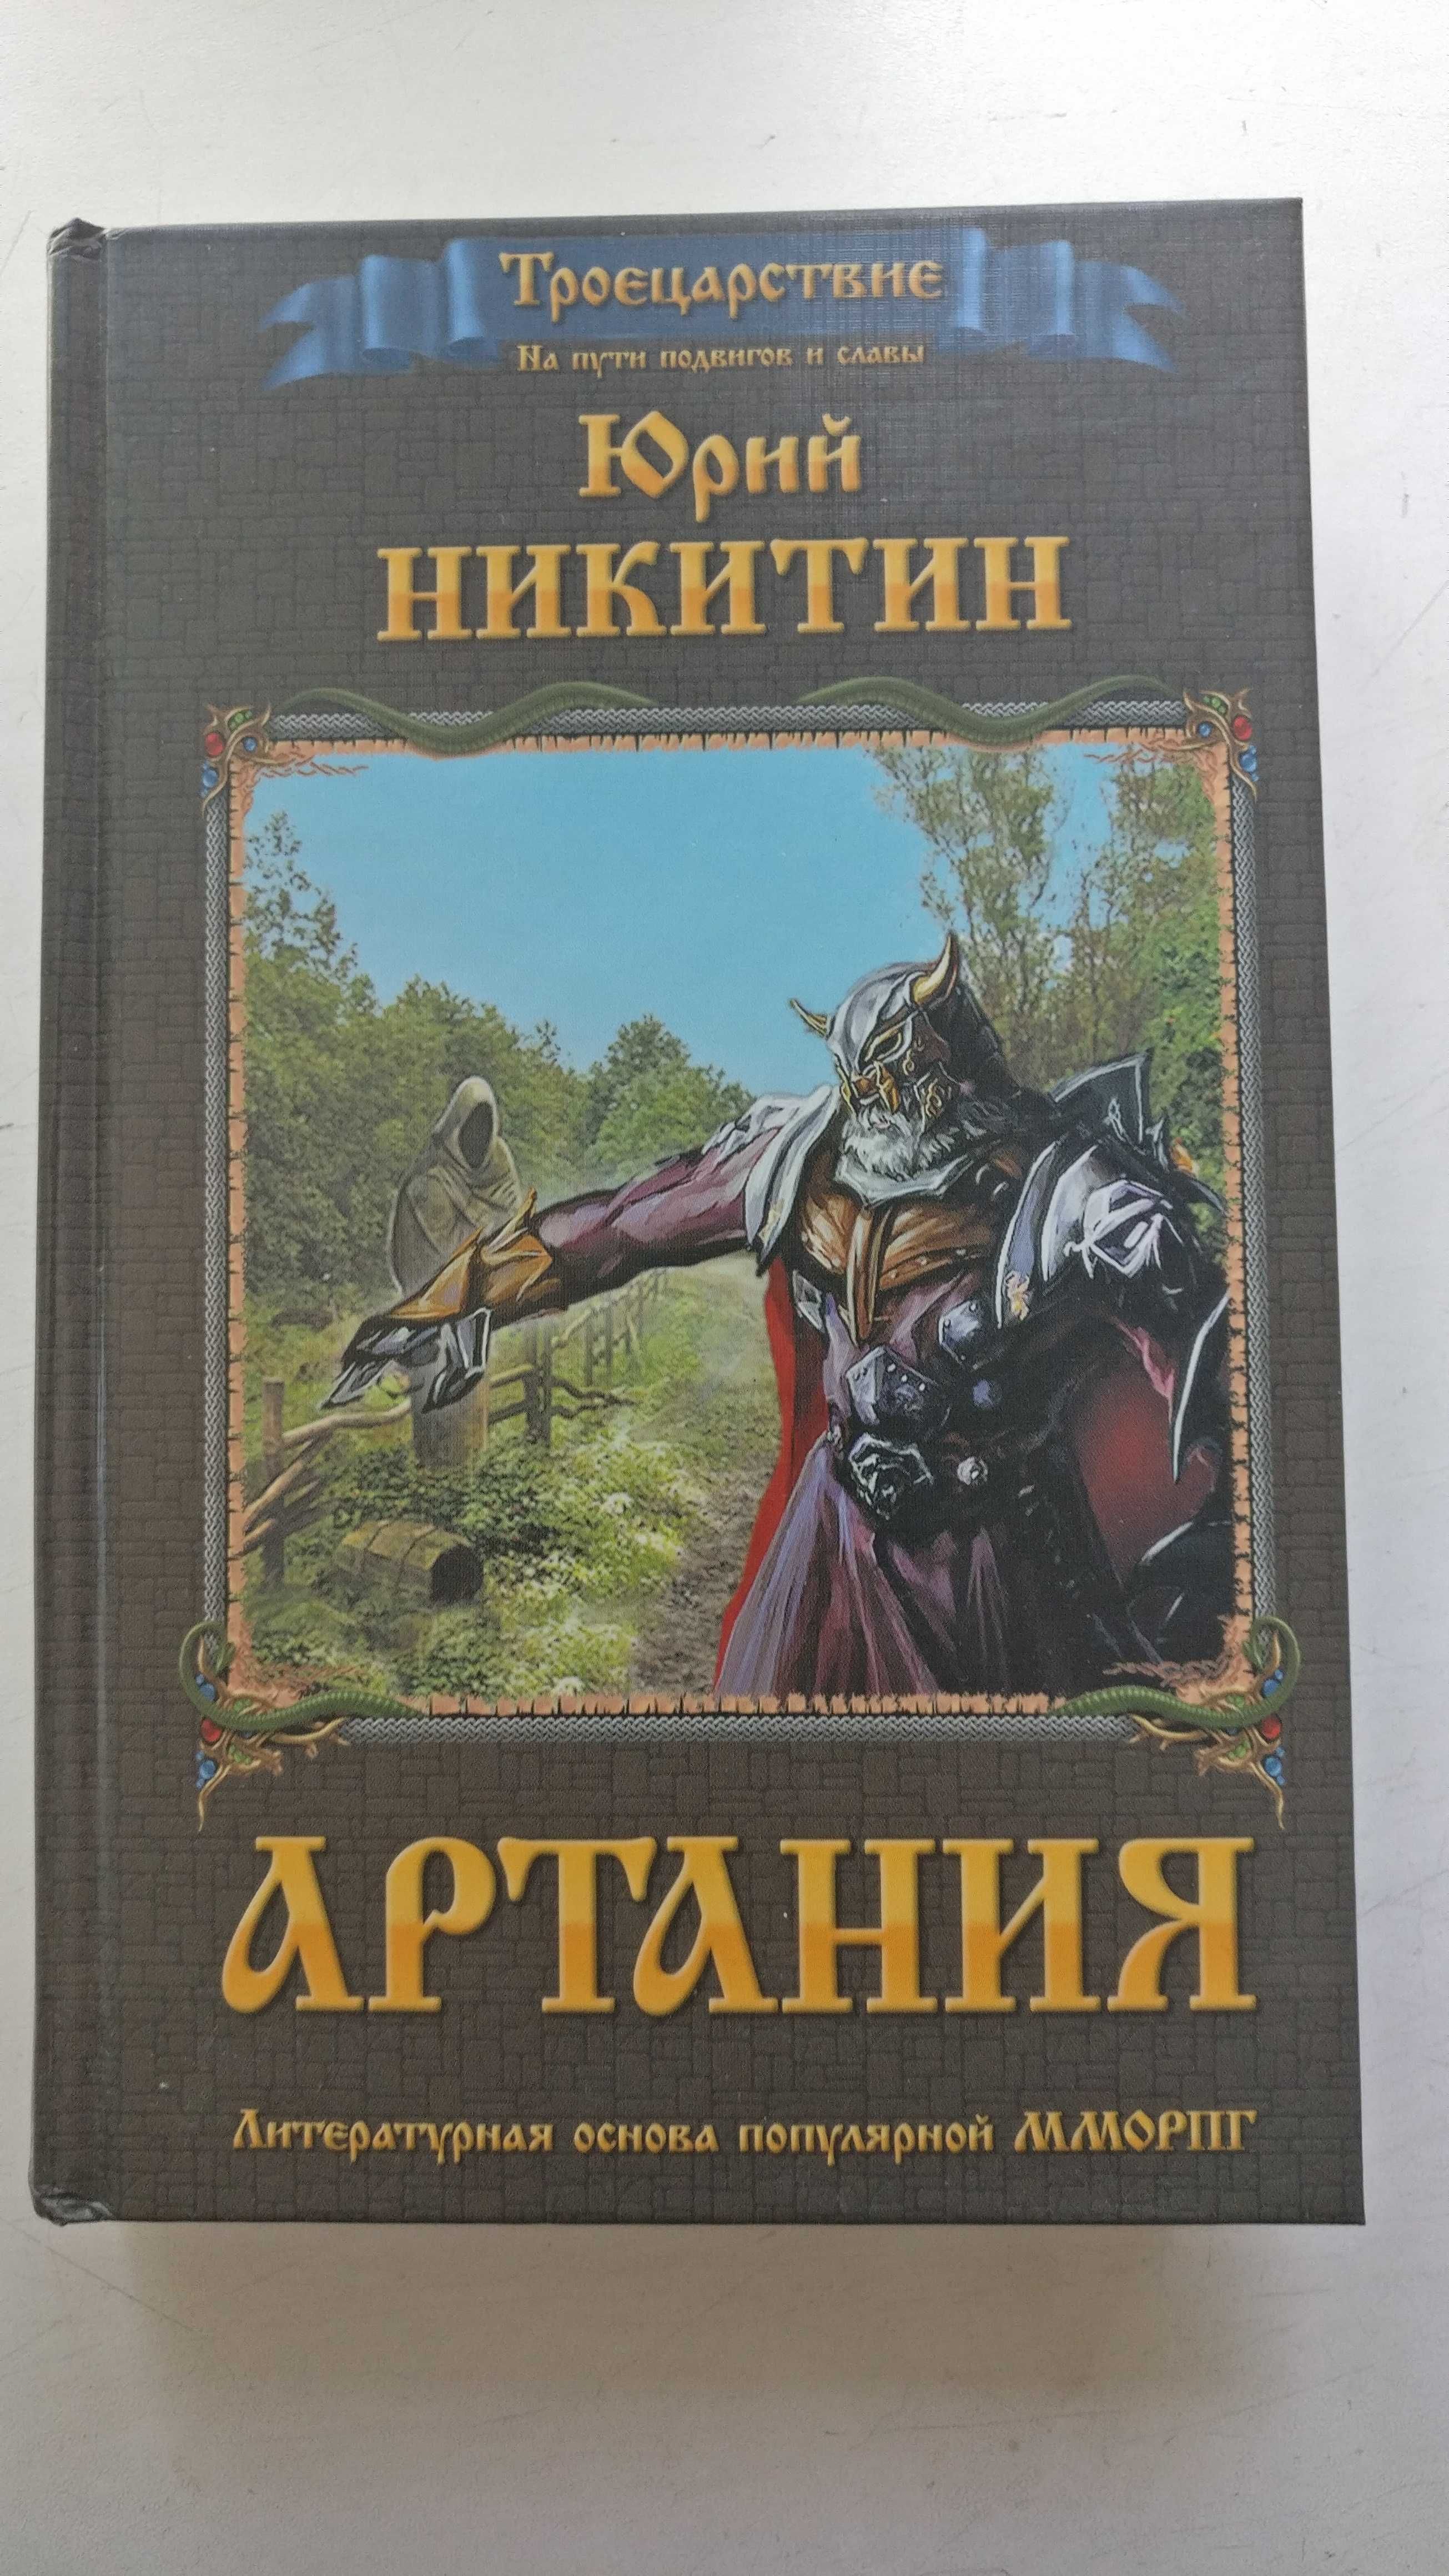 Фантастические романы Ю.Никитина из цикла Троецарствие, (4 тома)